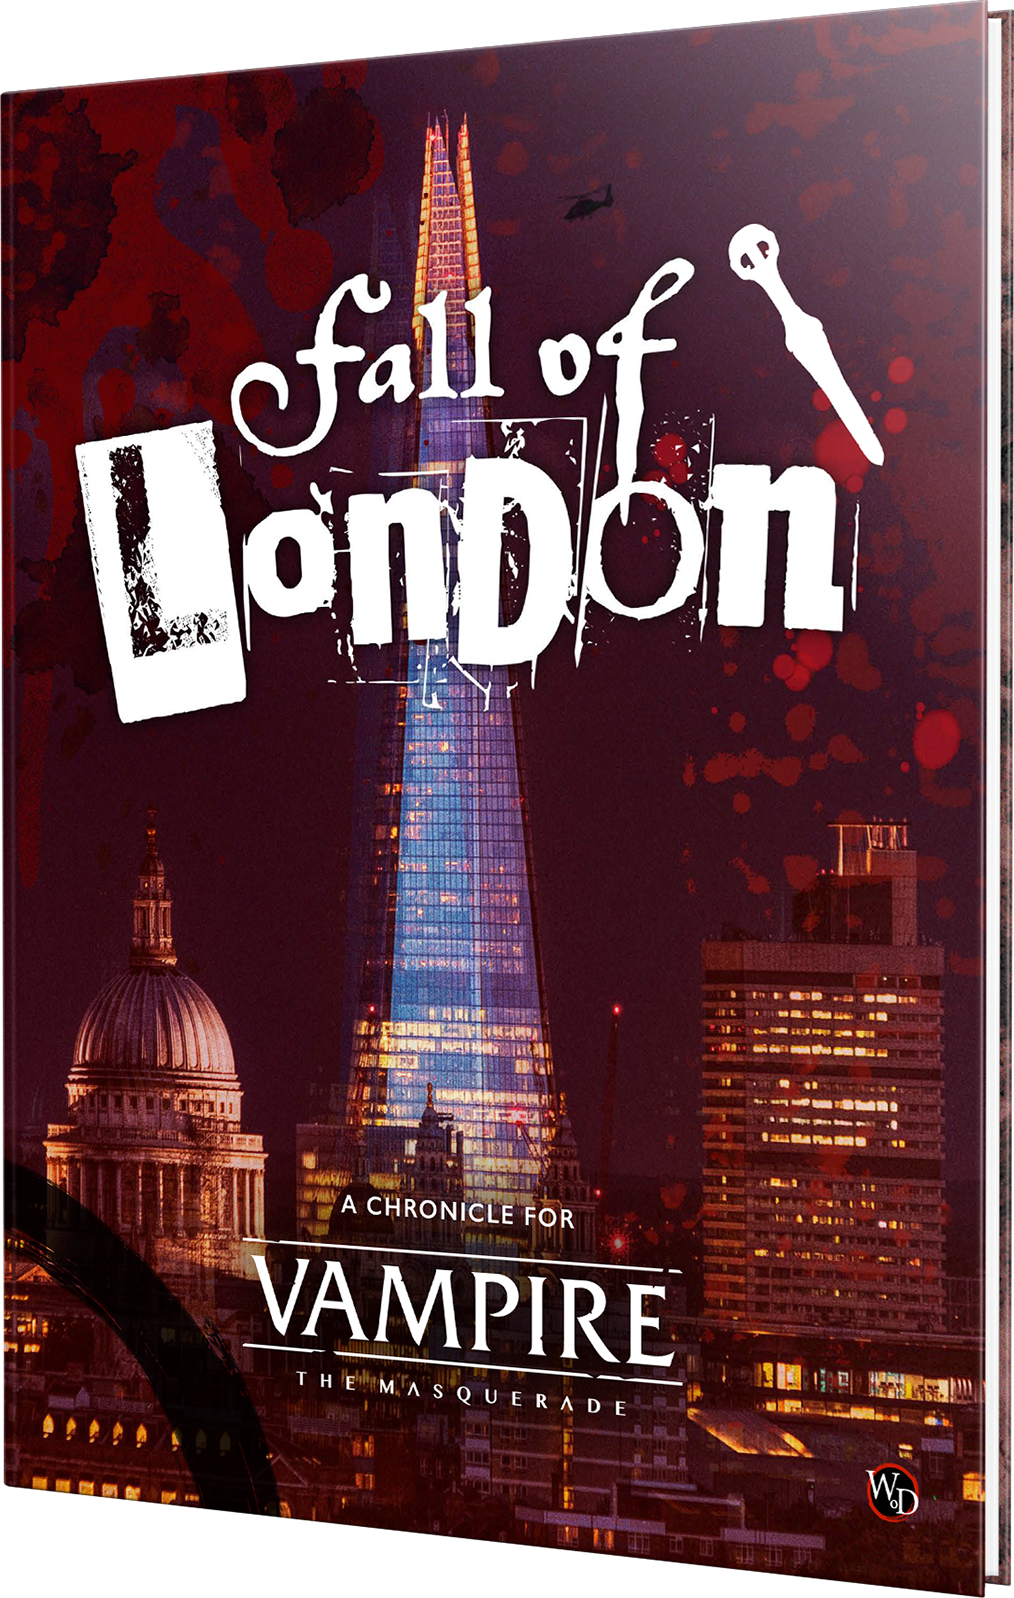 Vampire: The Masquerade 5th Edition Corebook, White Wolf Wiki